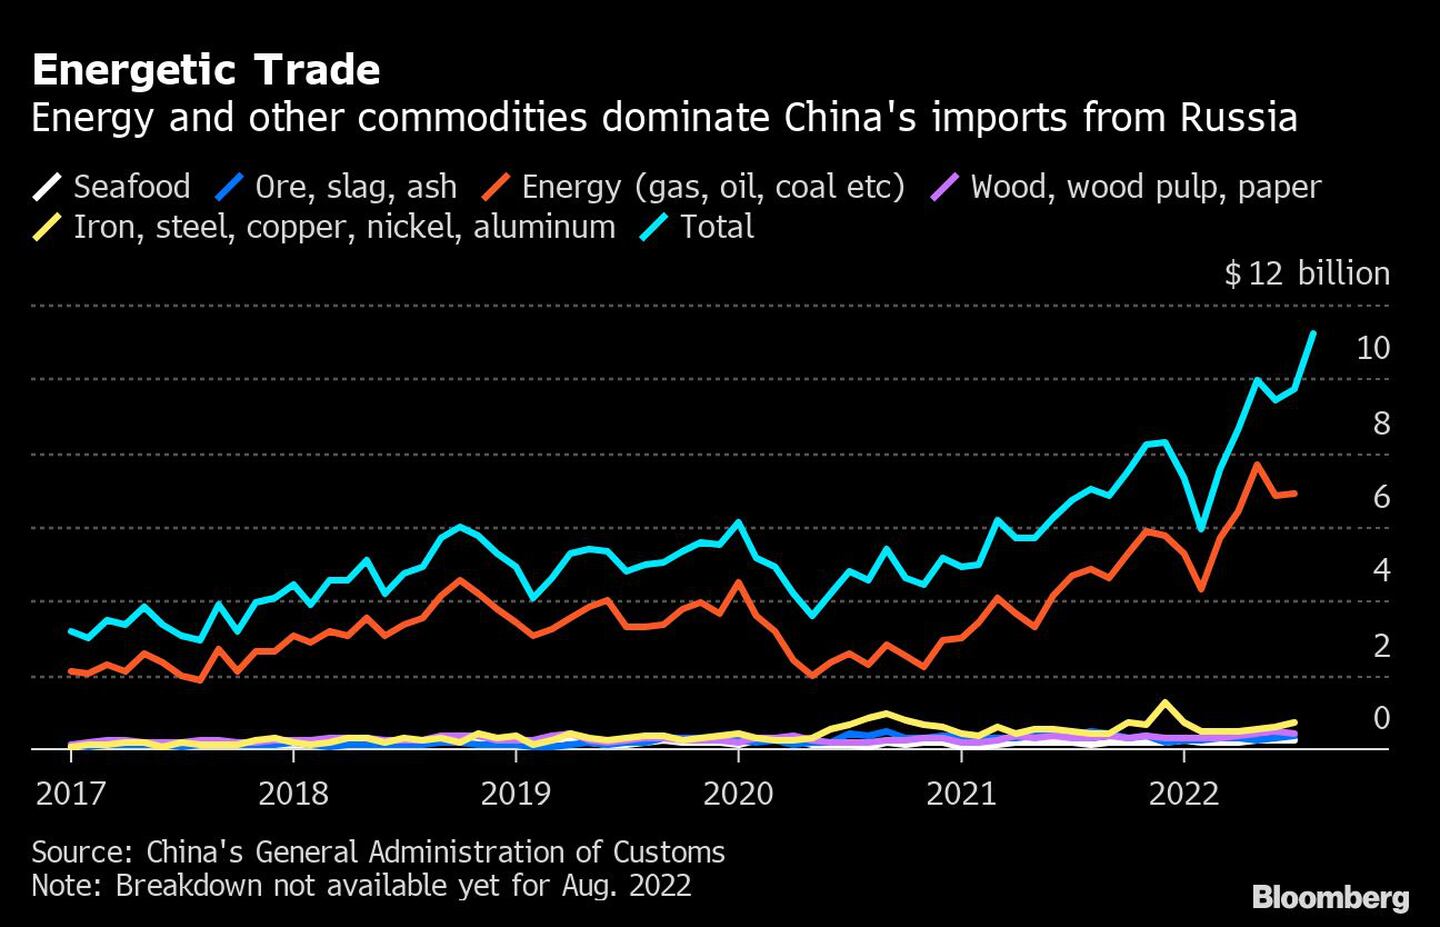 La energía y otras materias primas dominan las importaciones chinas desde Rusiadfd